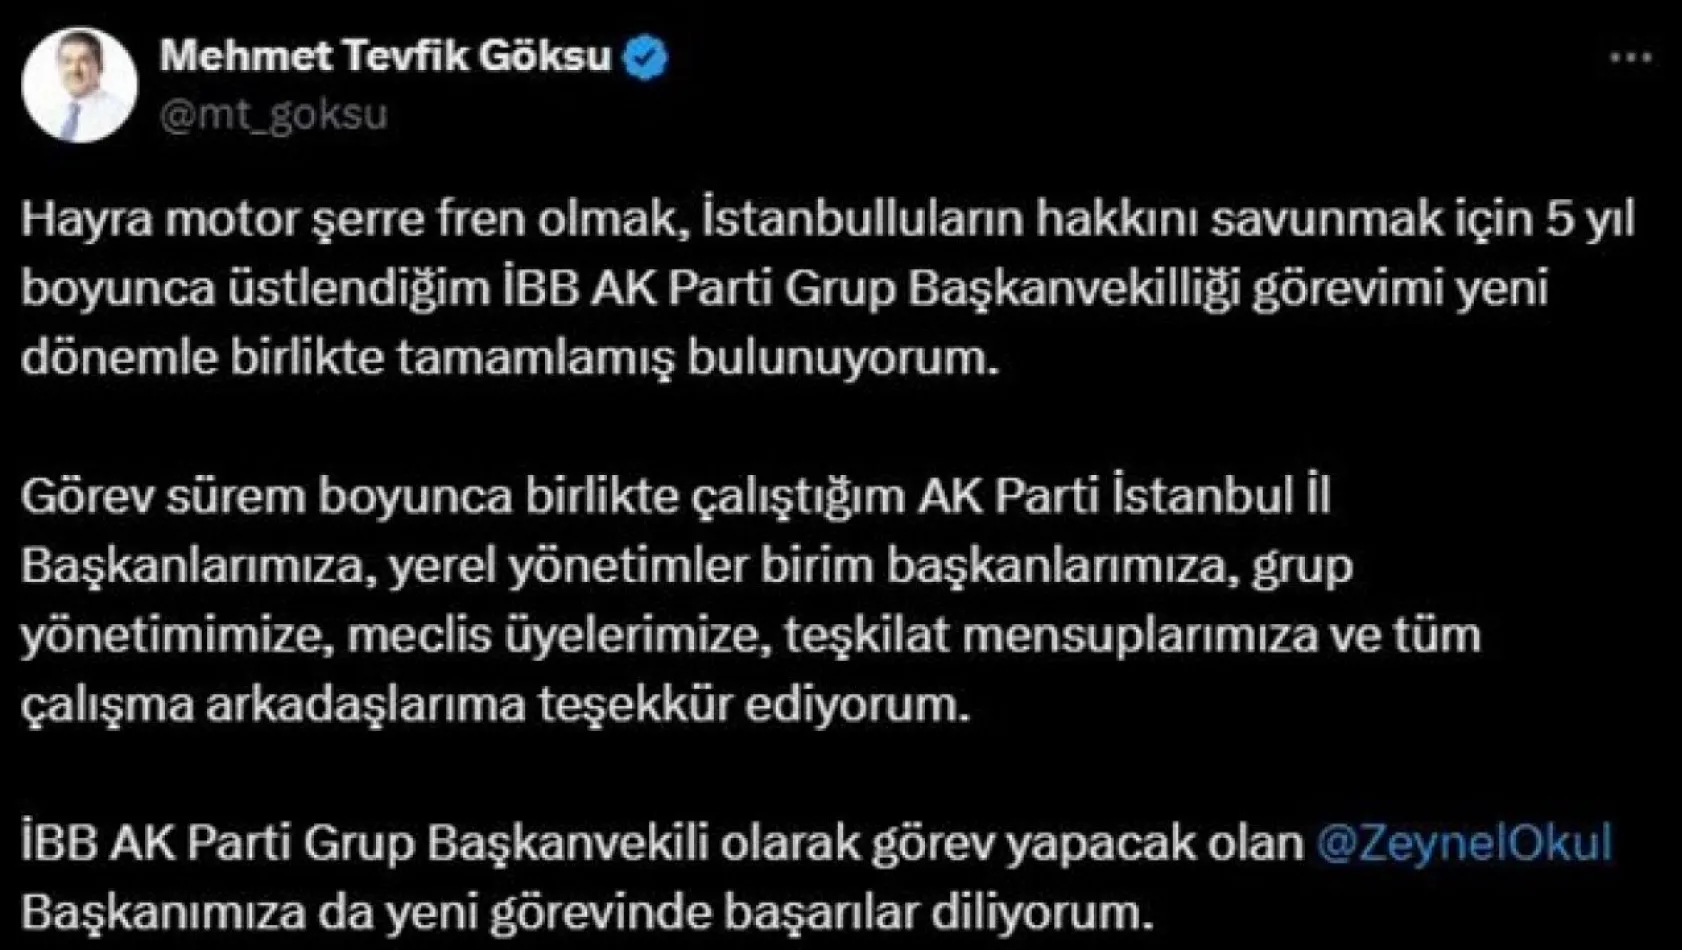 Esenler Belediye Başkanı Tevfik Göksu'nun İBB Meclisi'ndeki AK Parti Grup Başkanvekilliği görevi sona erdi